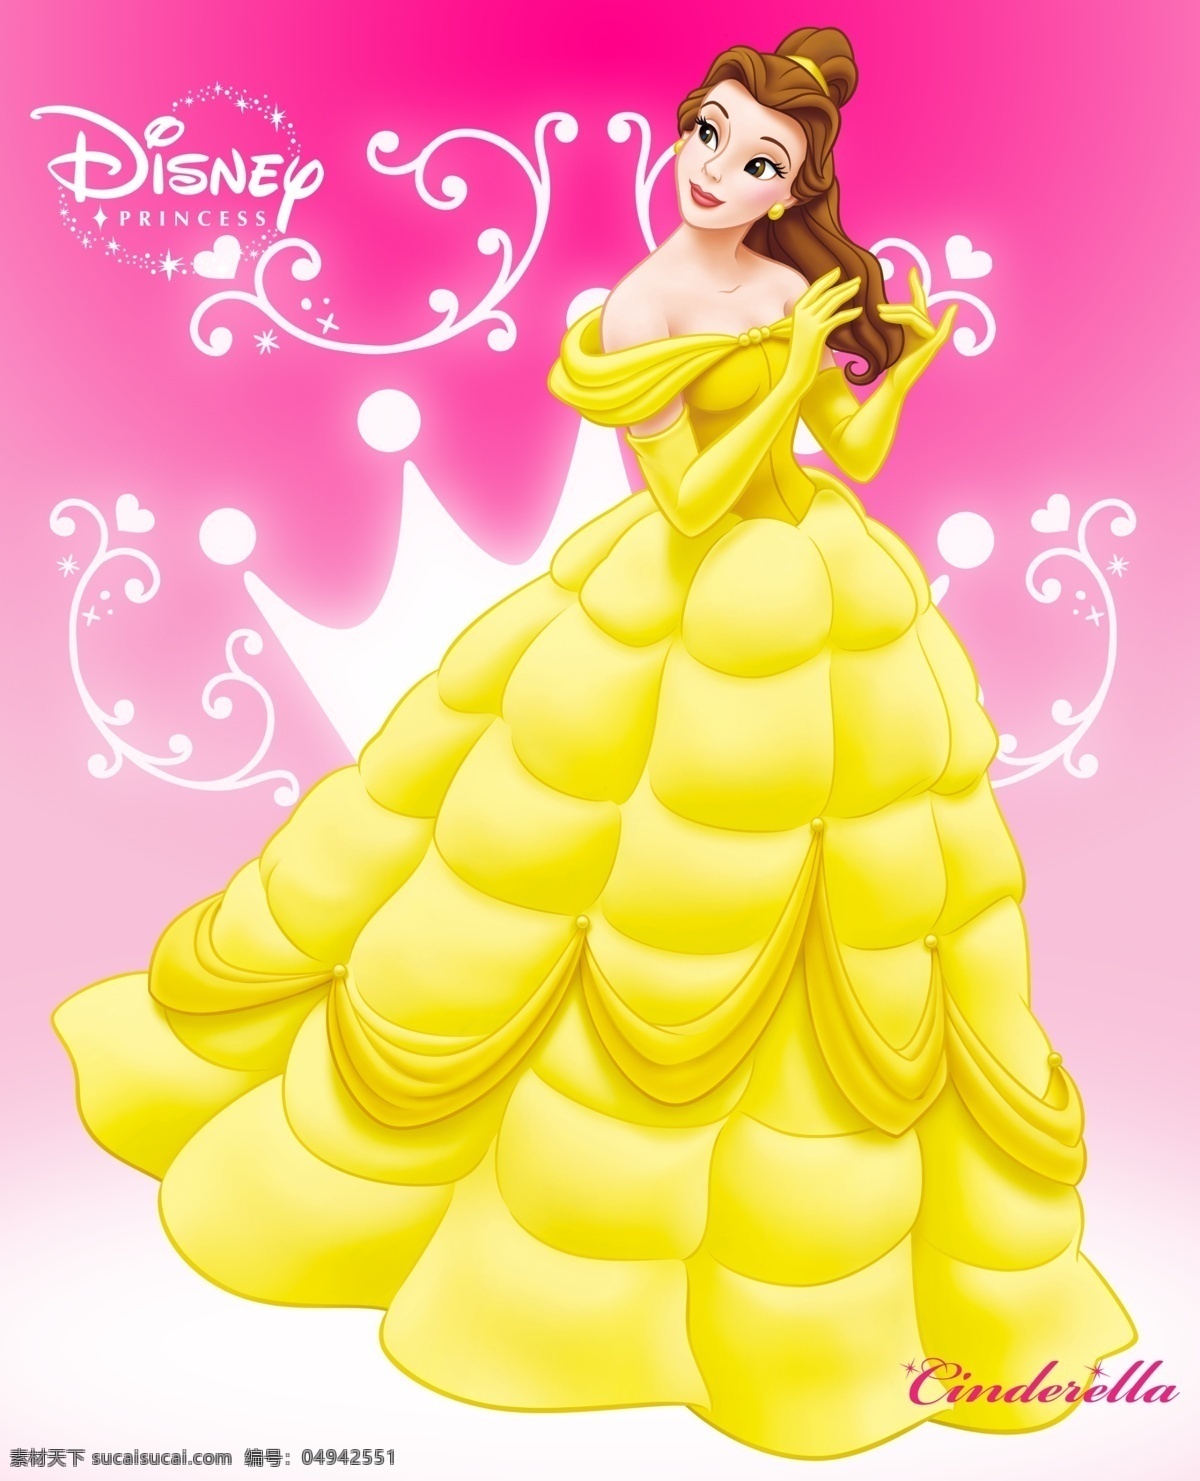 迪士尼公主 高清 t恤印花 婴童印花 可爱公主 公主 动漫动画 动漫人物